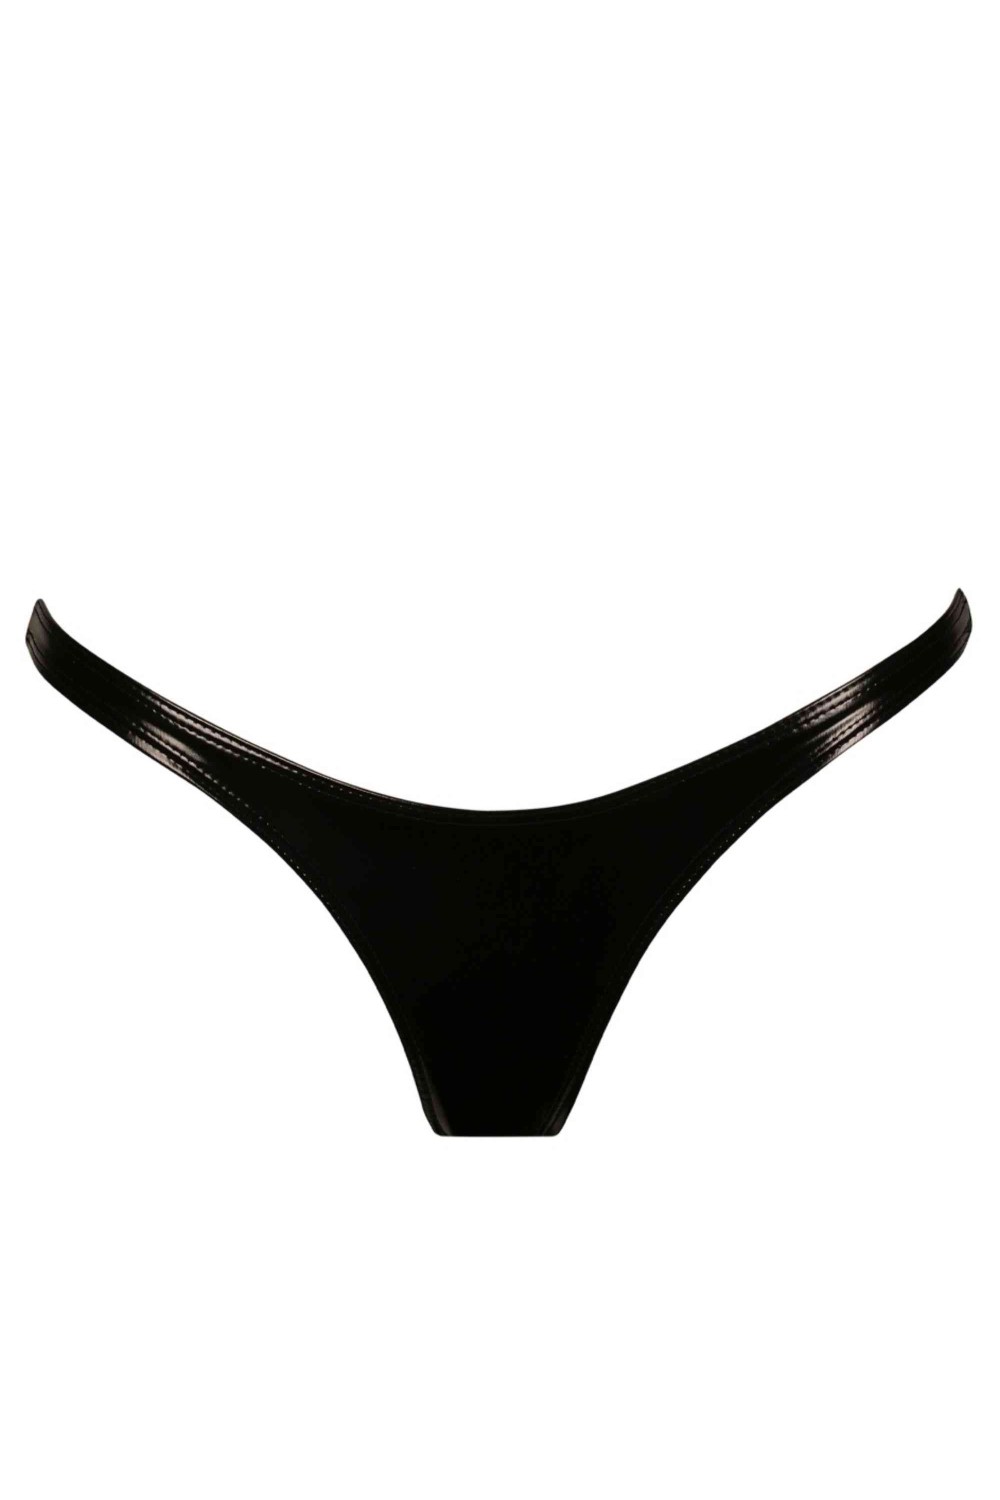 Black Level - Vinyl Bra black 85C - Underwear - Photopoint